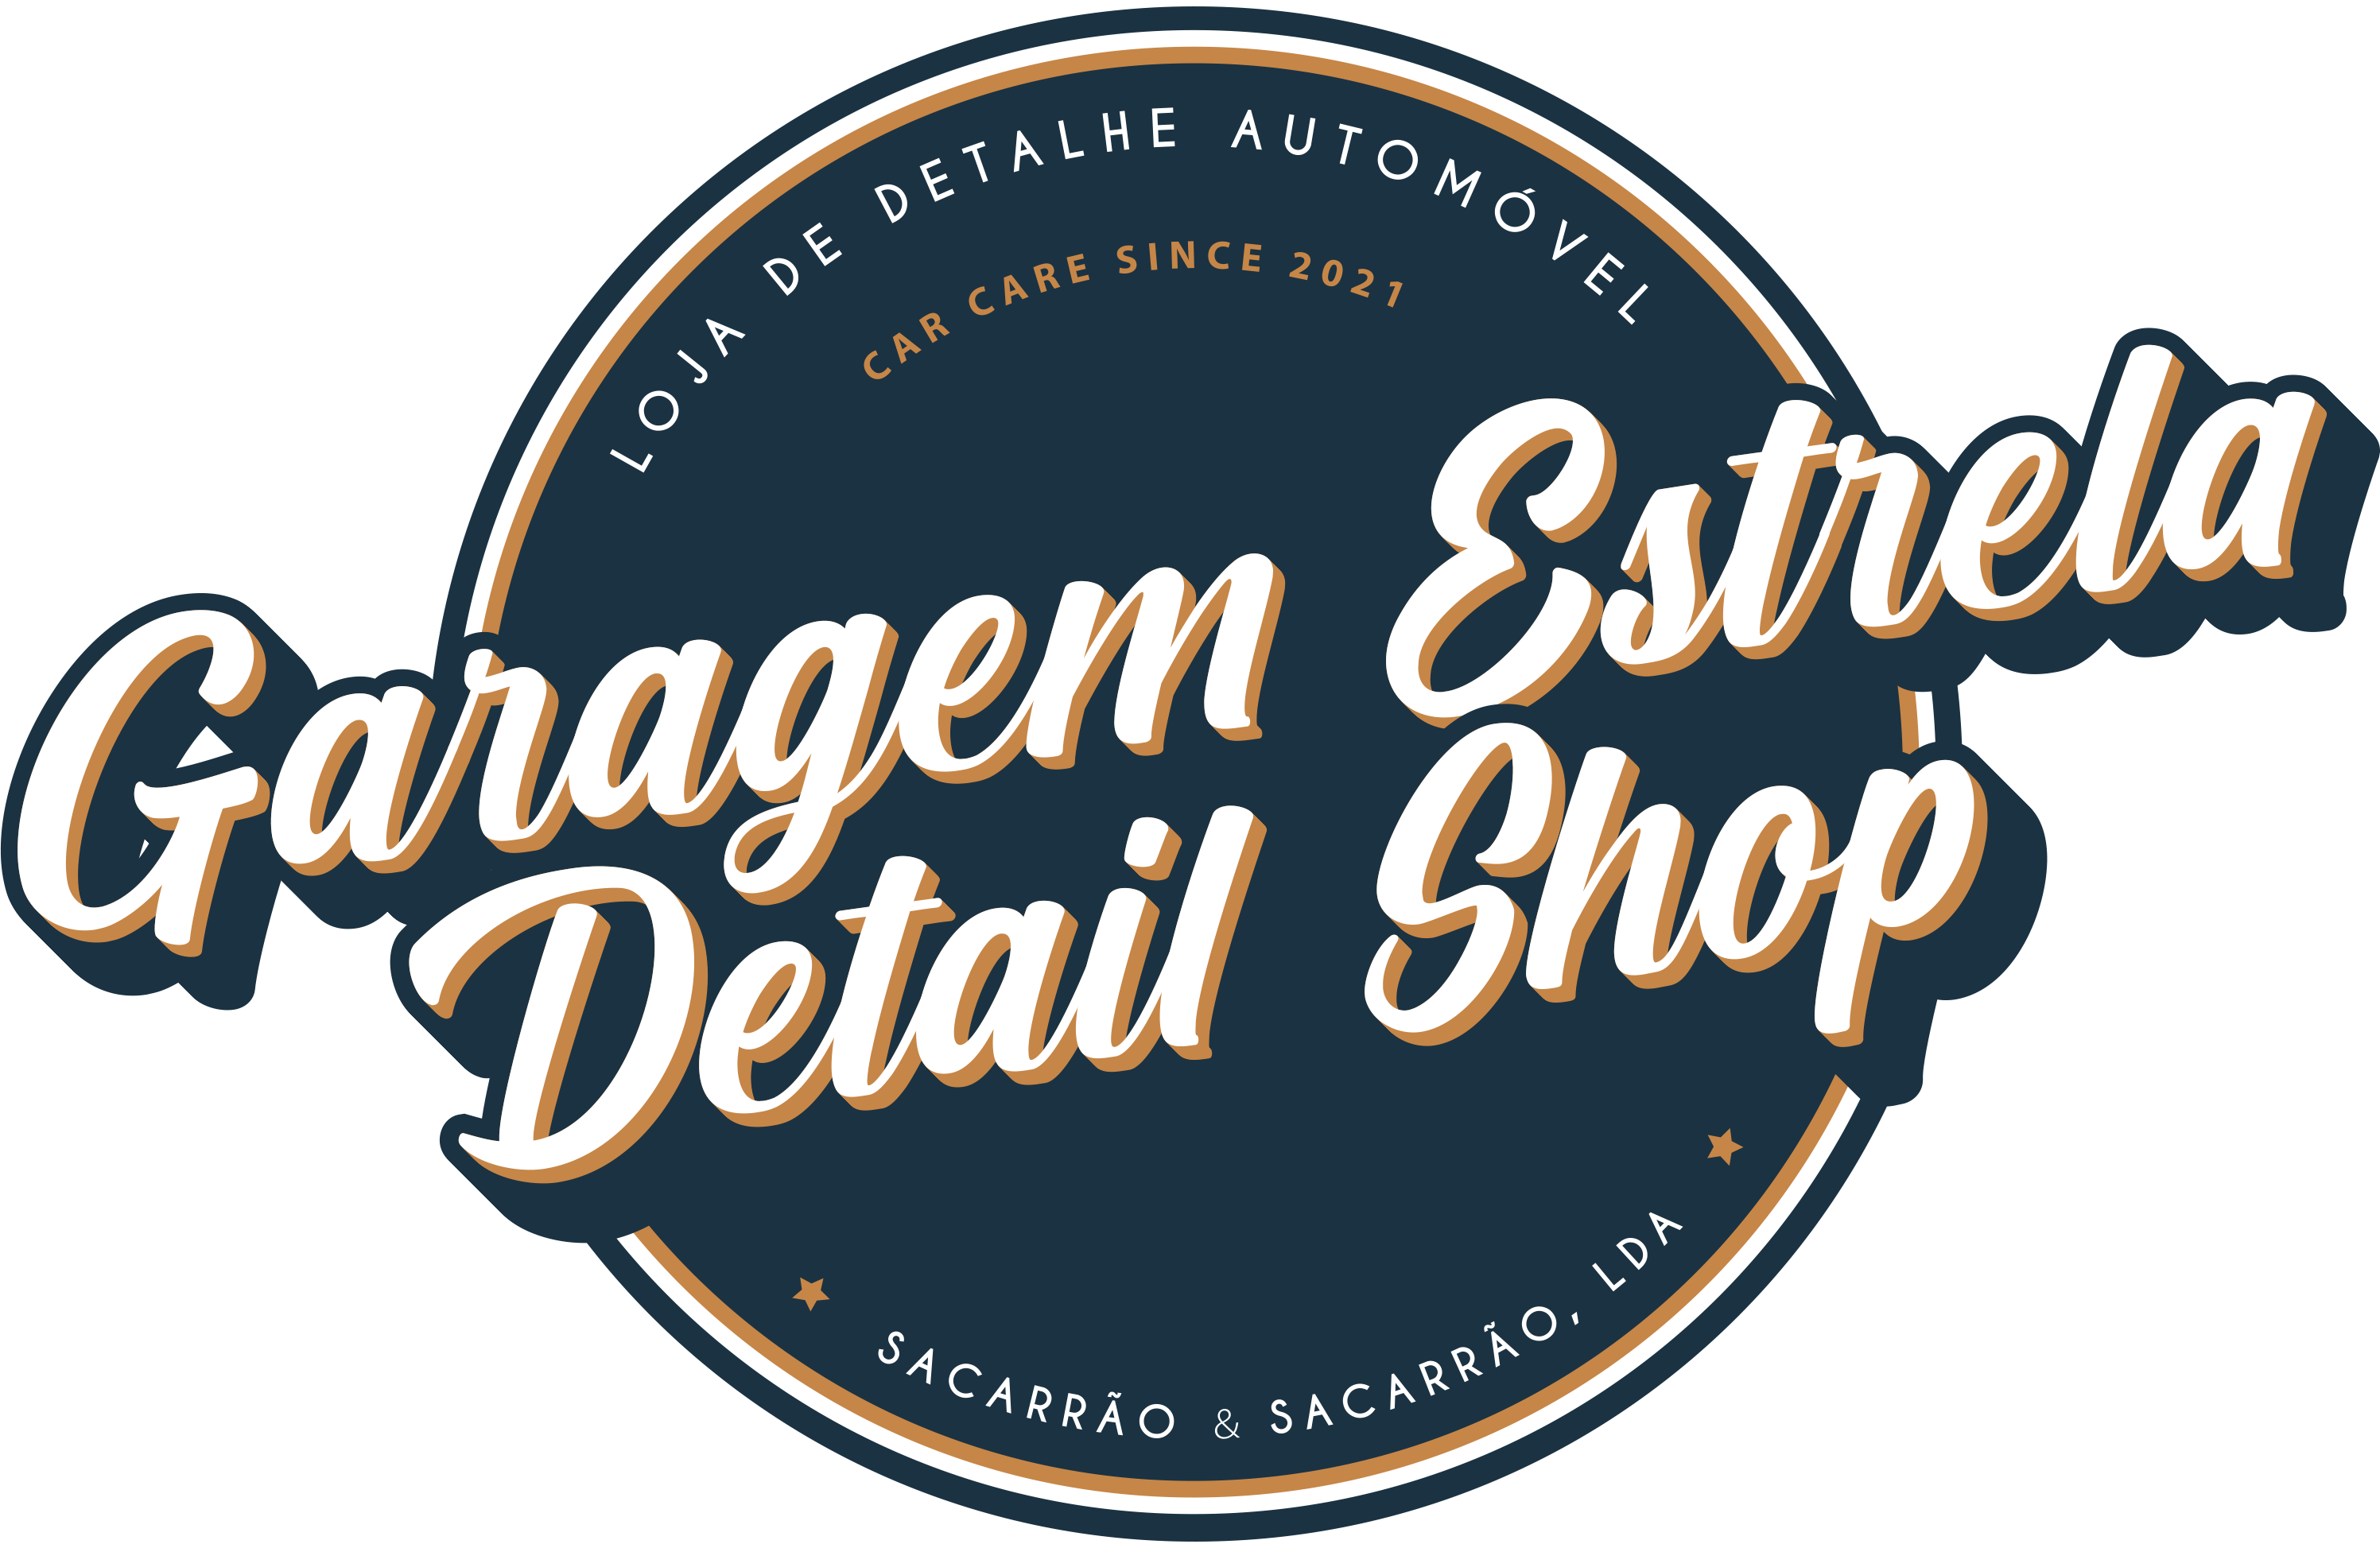 Garagem Estrela DetailShop